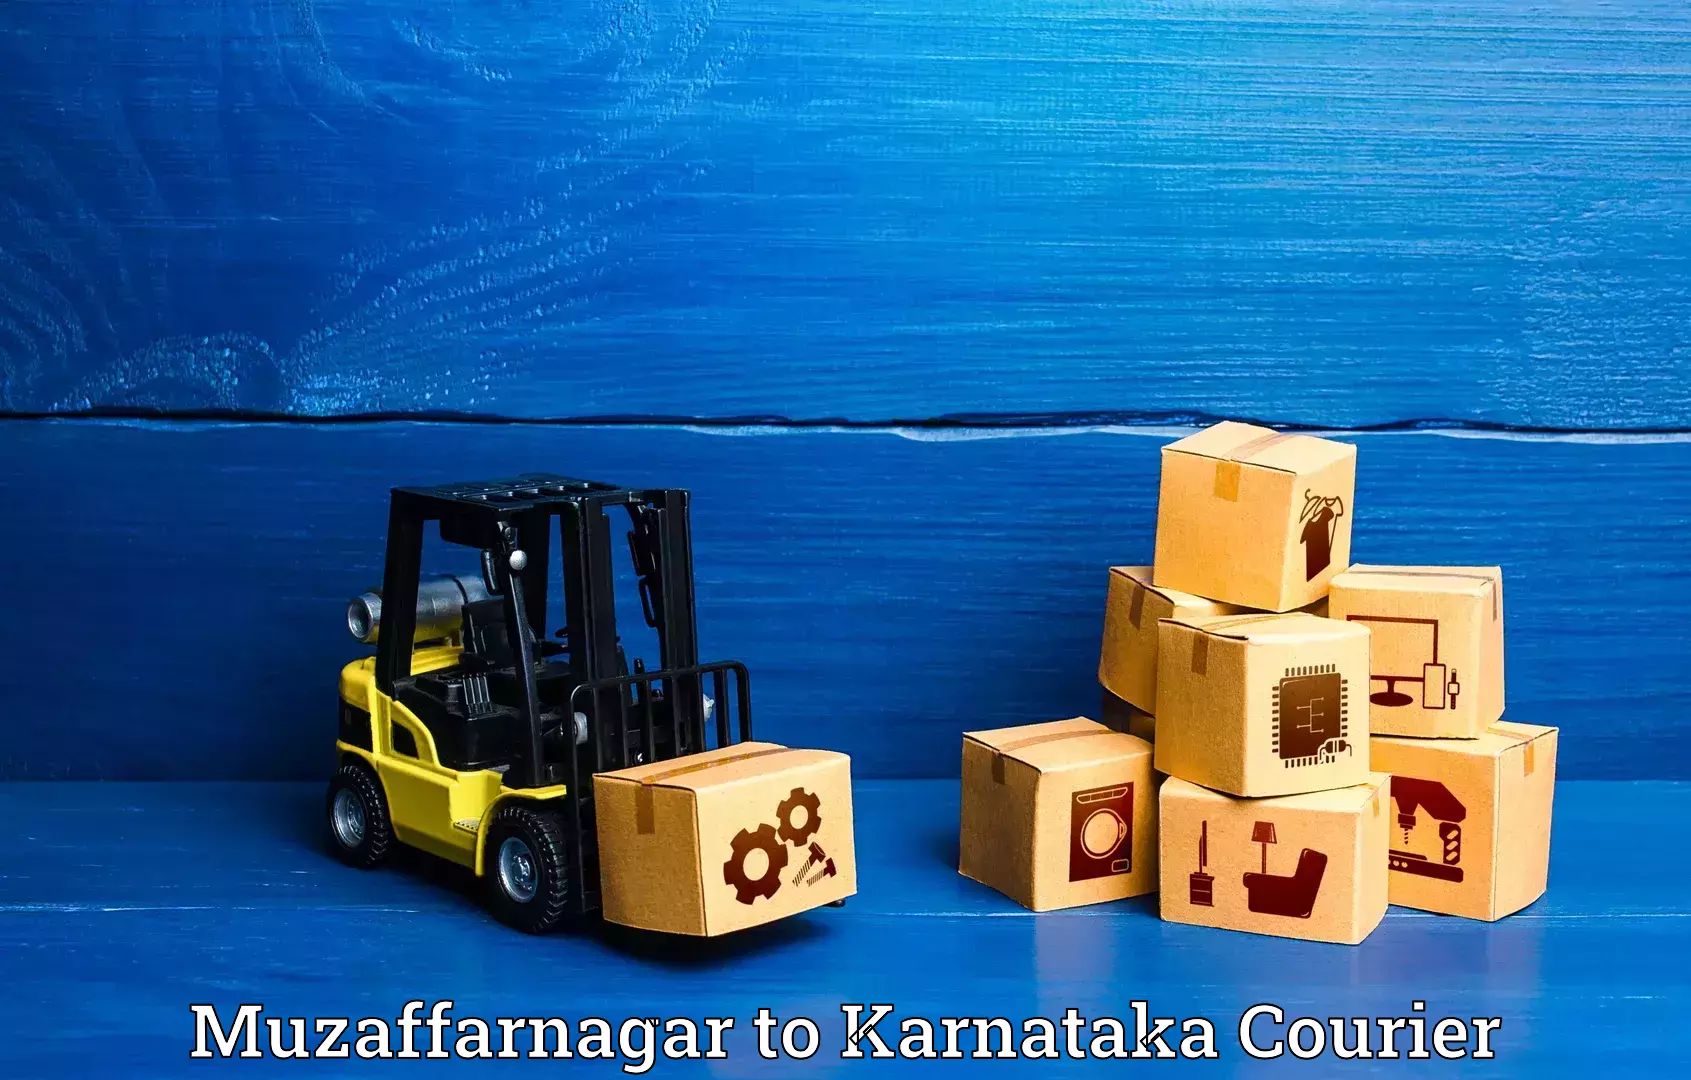 Luggage delivery operations in Muzaffarnagar to Manvi